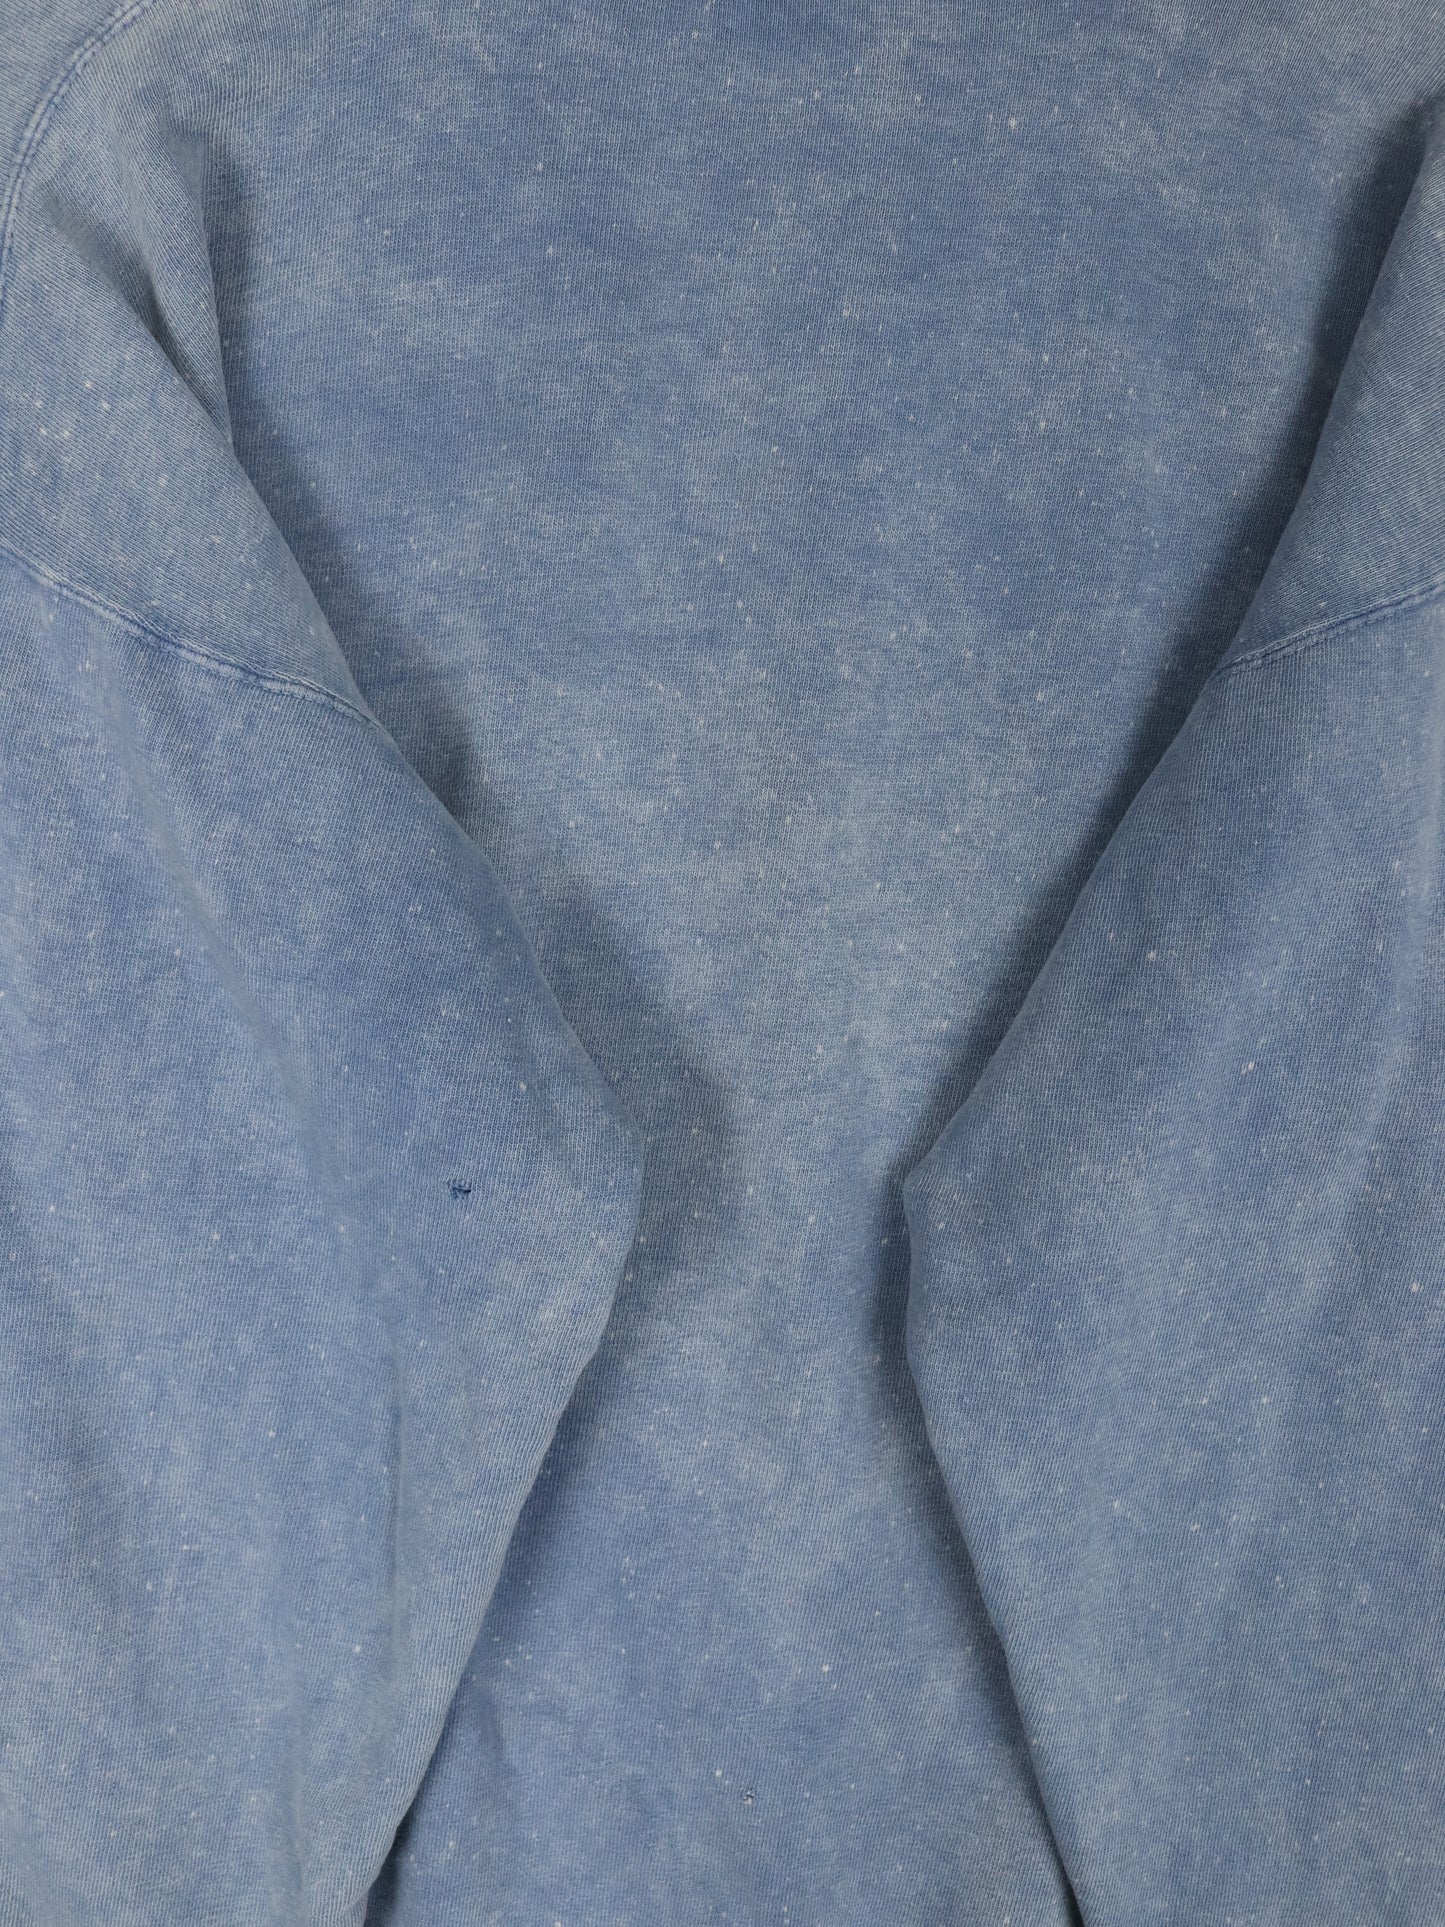 Vintage Sears Sweatshirt Mens Medium Blue Football 90s